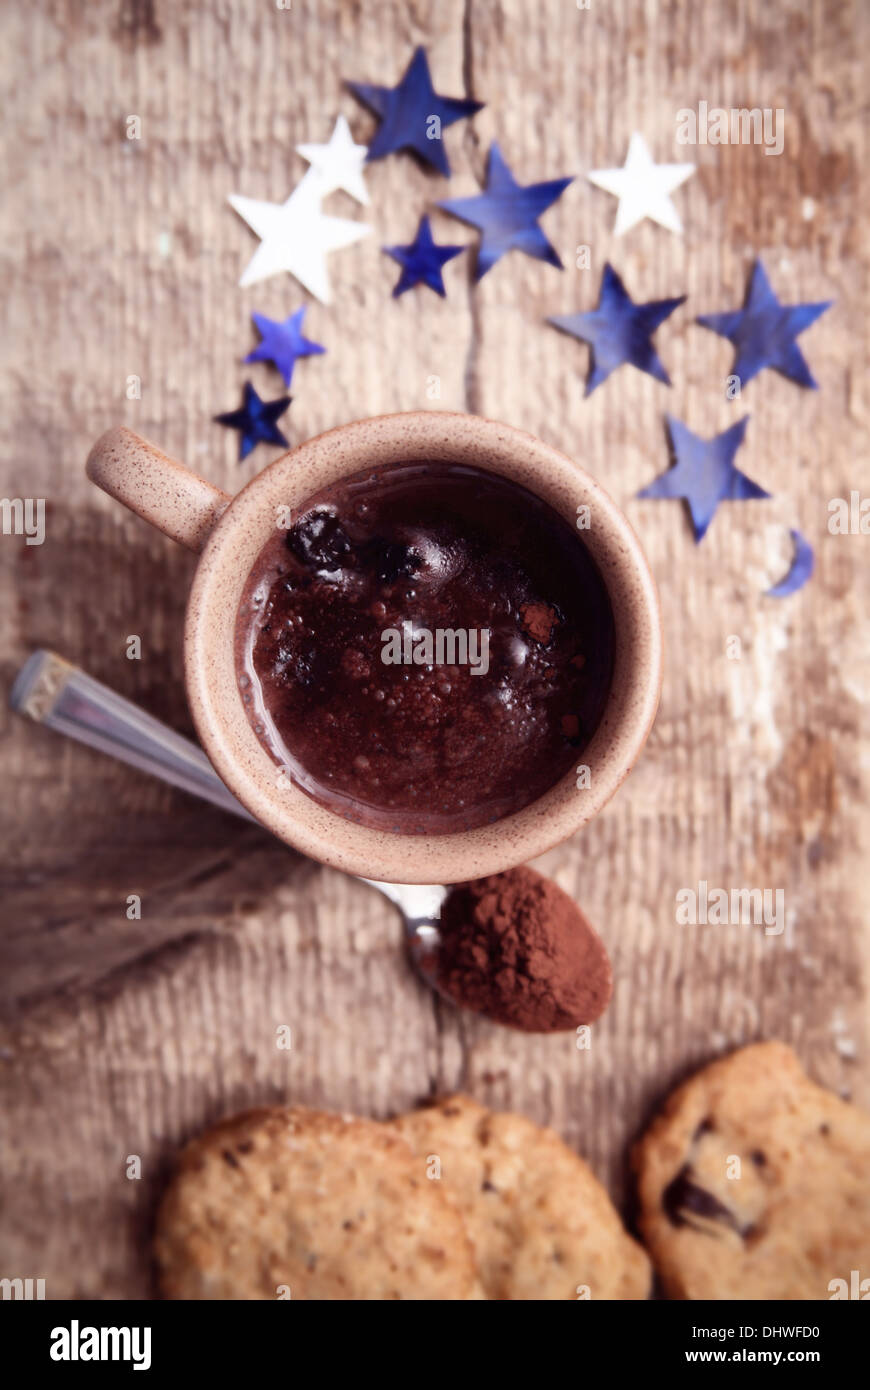 Image aux couleurs, chocolat, cacao, biscuits à la cuillère avec du papier bleu, étoile, fond de bois Banque D'Images